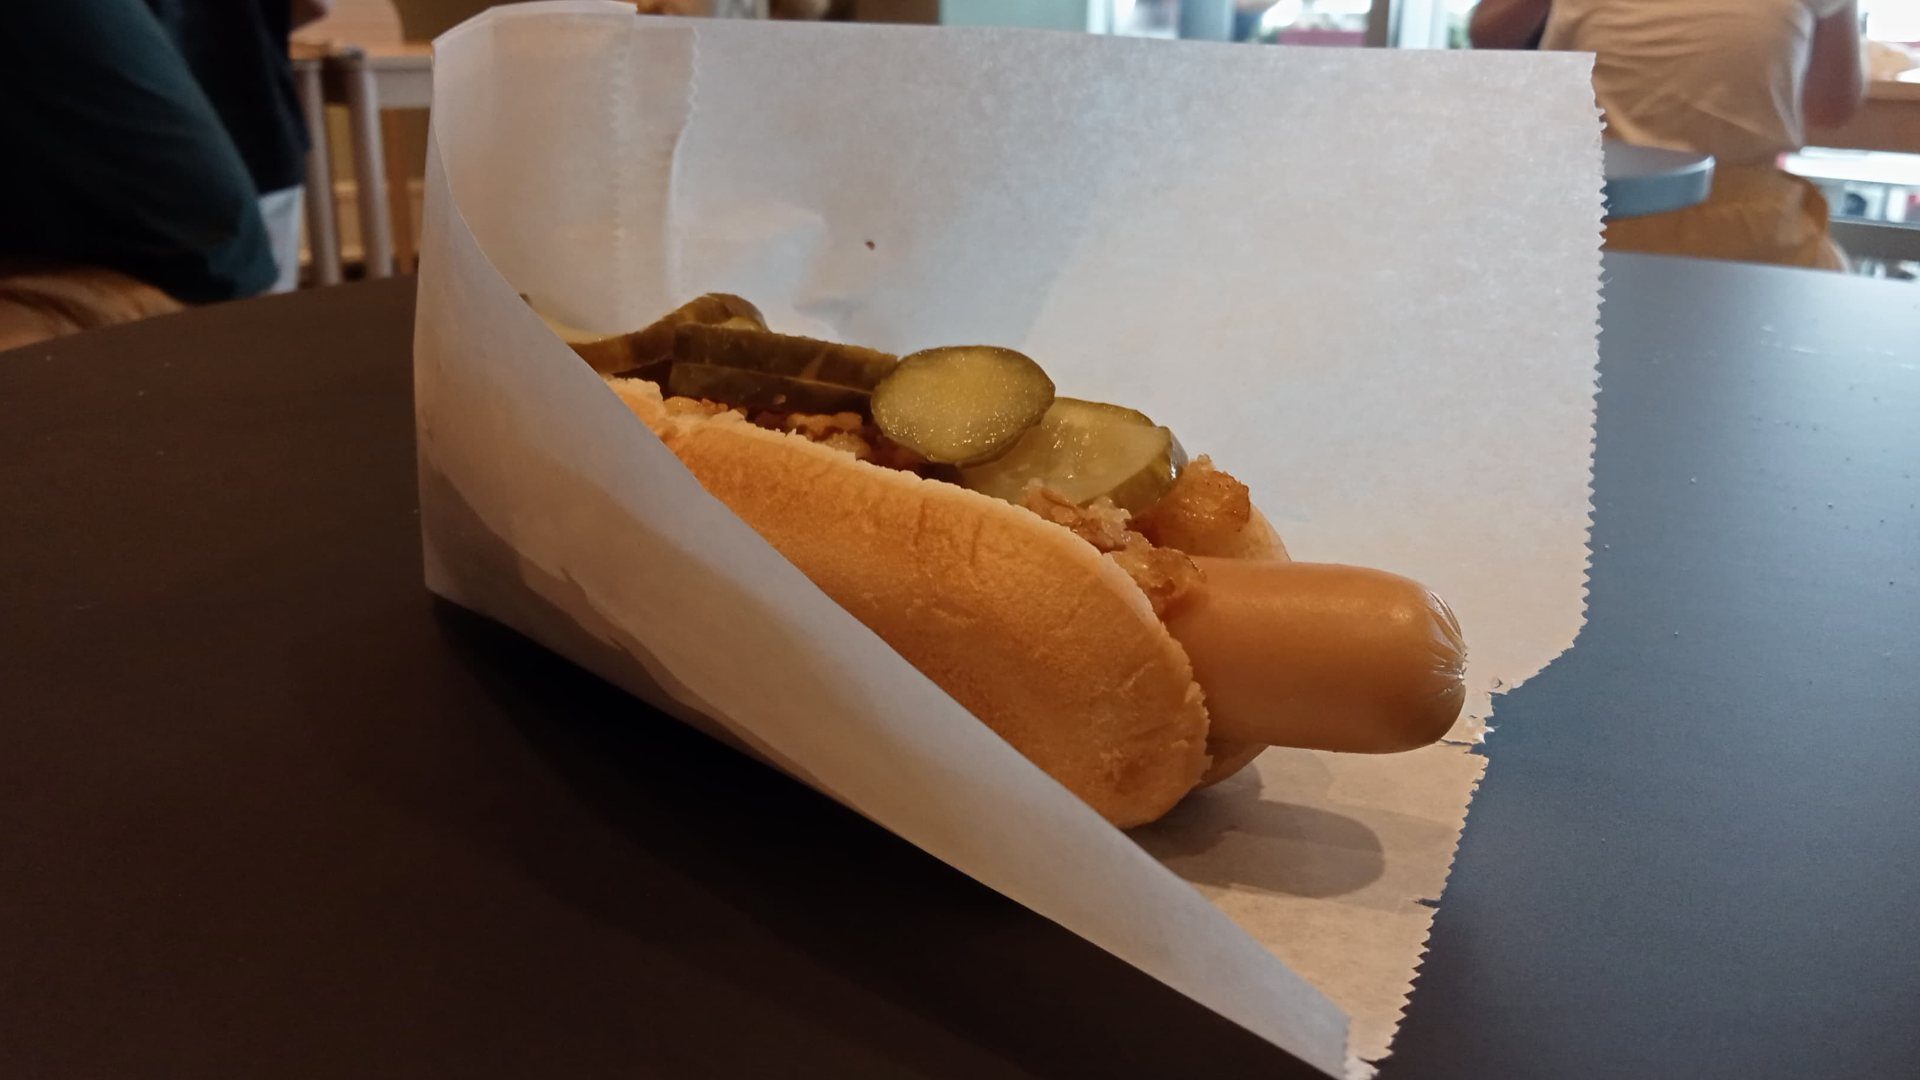 Ile kosztuje hot dog w Ikei? Jaka jest cena hot doga? 2022